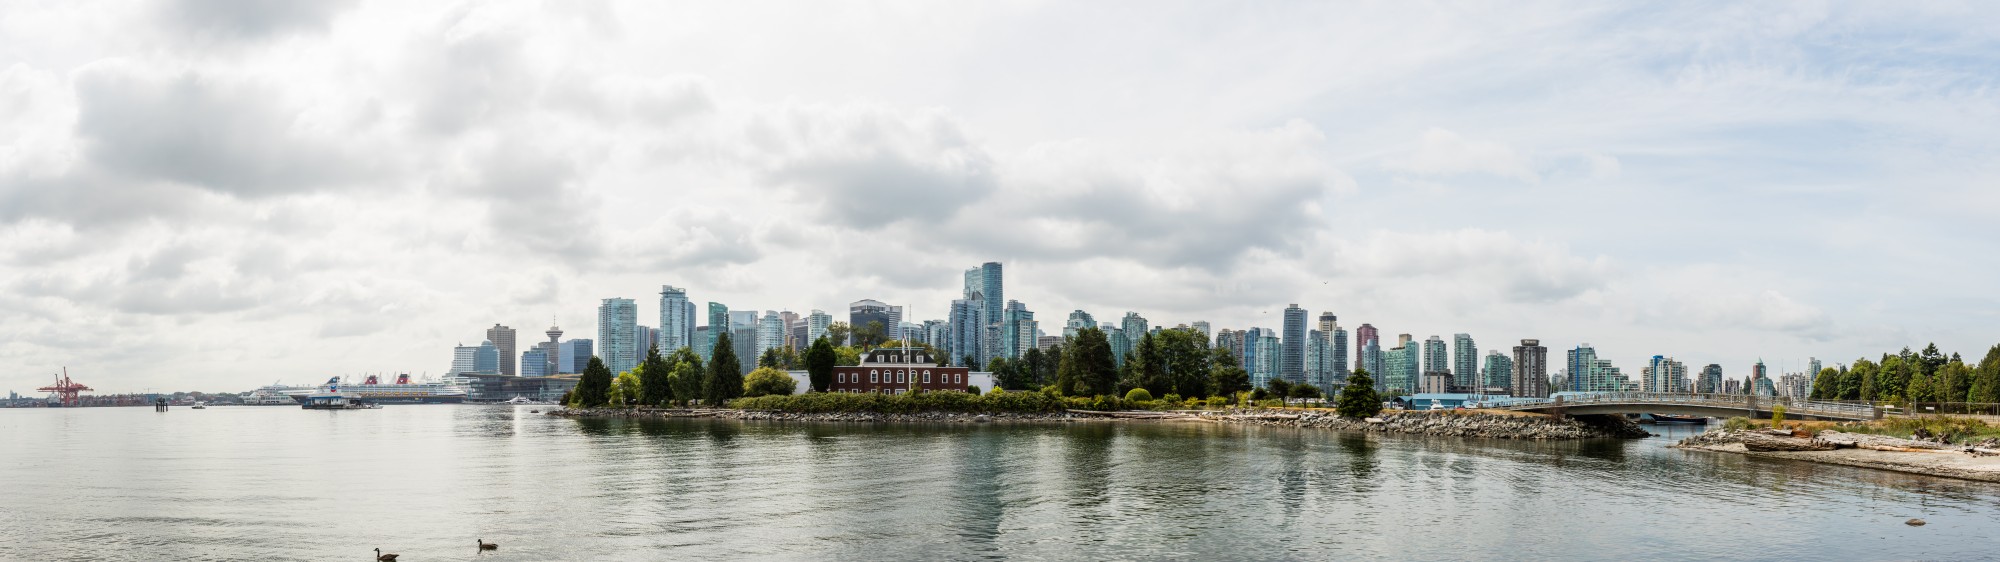 Vista de Vancouver desde el parque Stanley, Canadá, 2017-08-14, DD 05-09 PAN